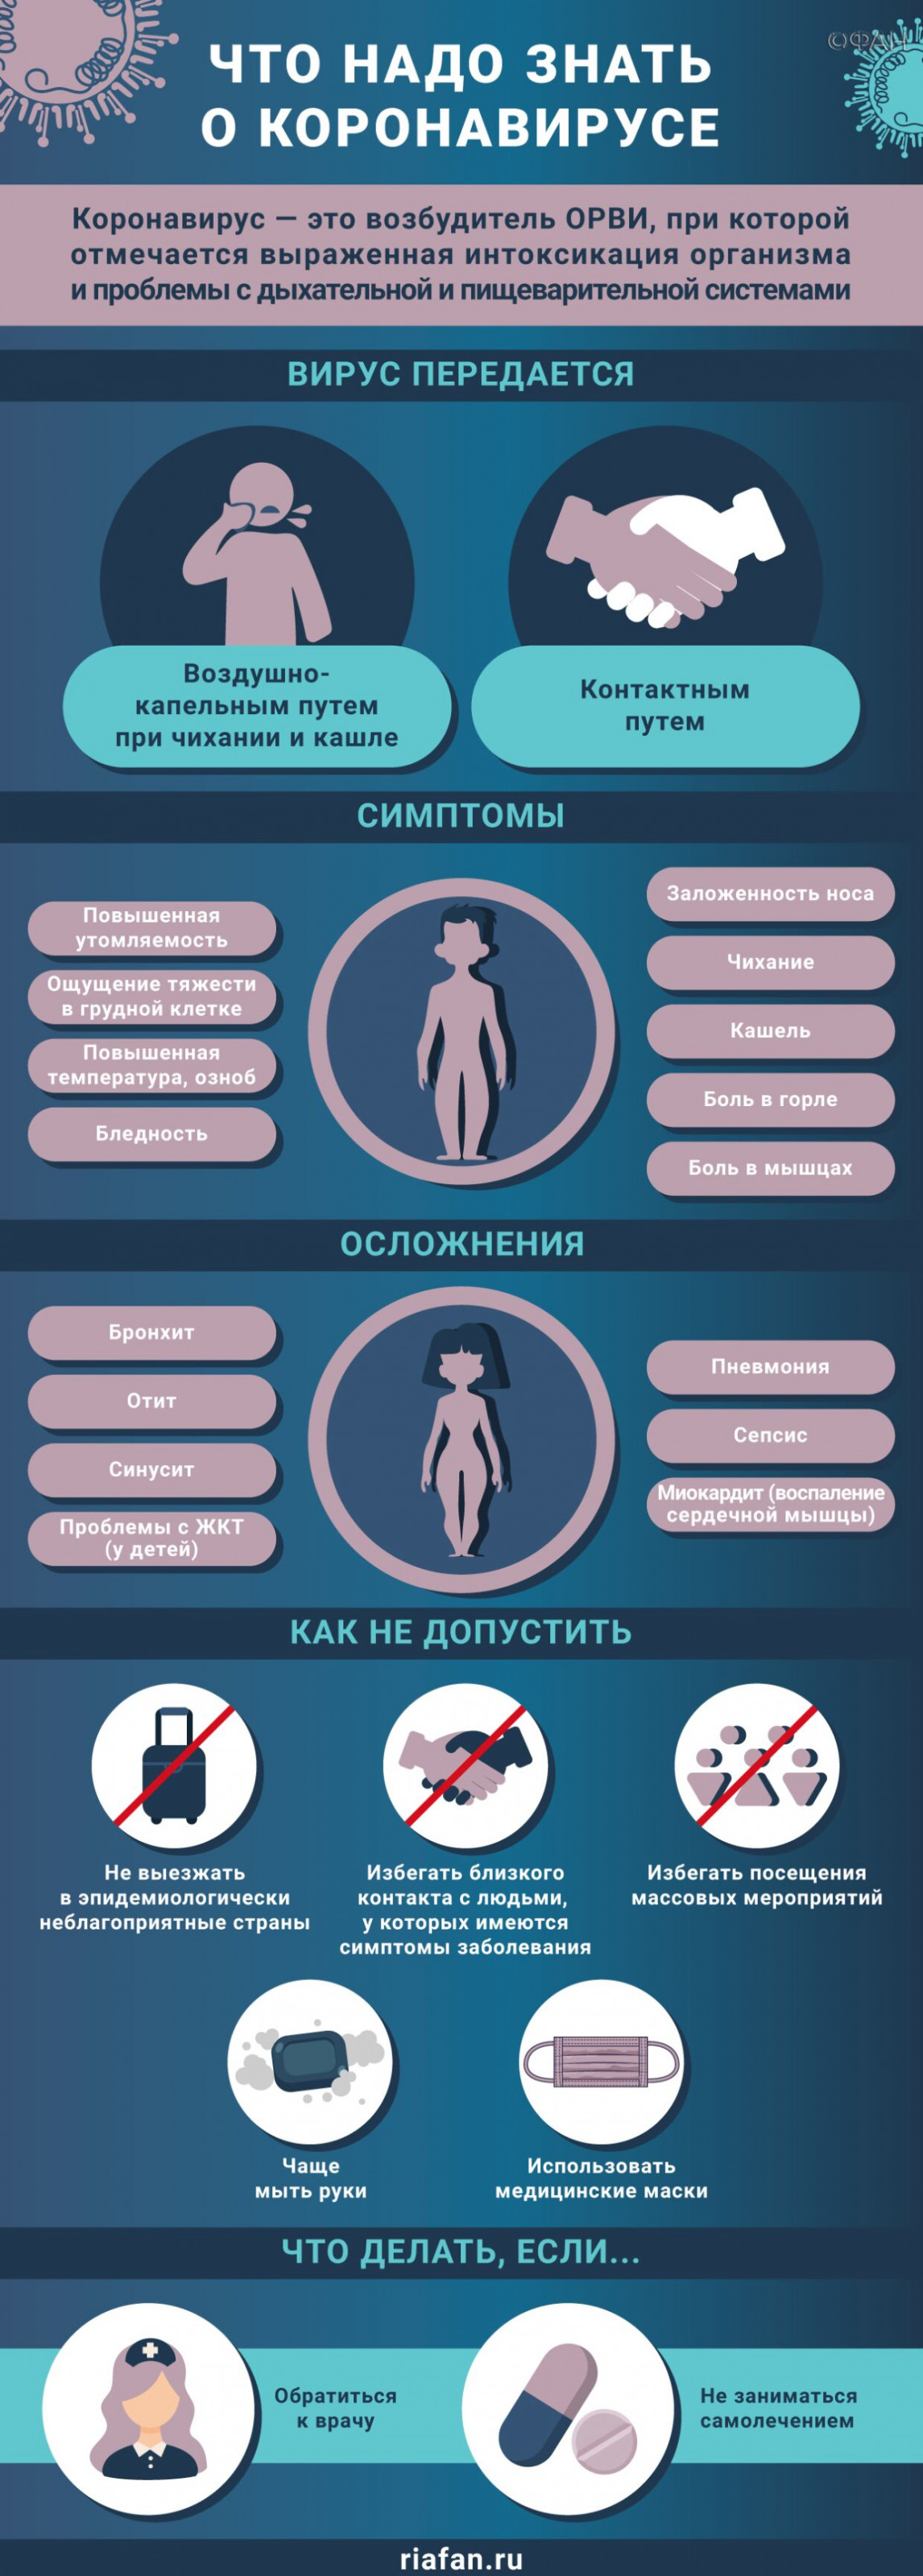 Медики за сутки выявили 182 случая коронавируса в Петербурге